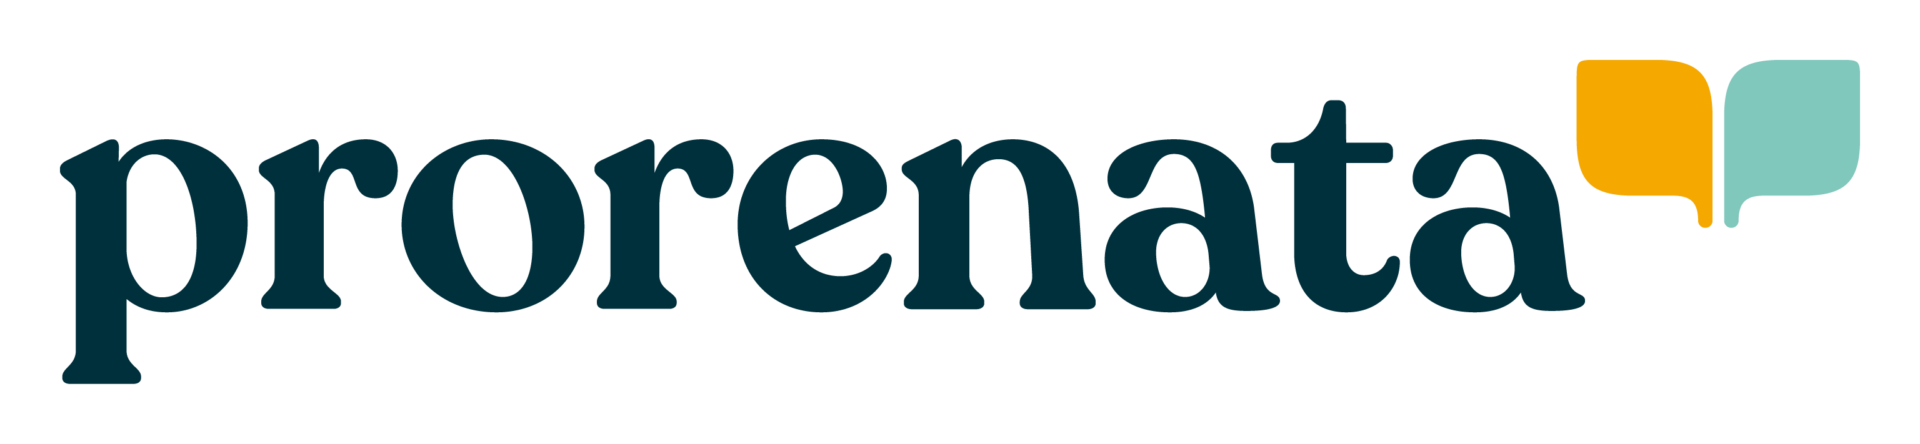 prn-logo